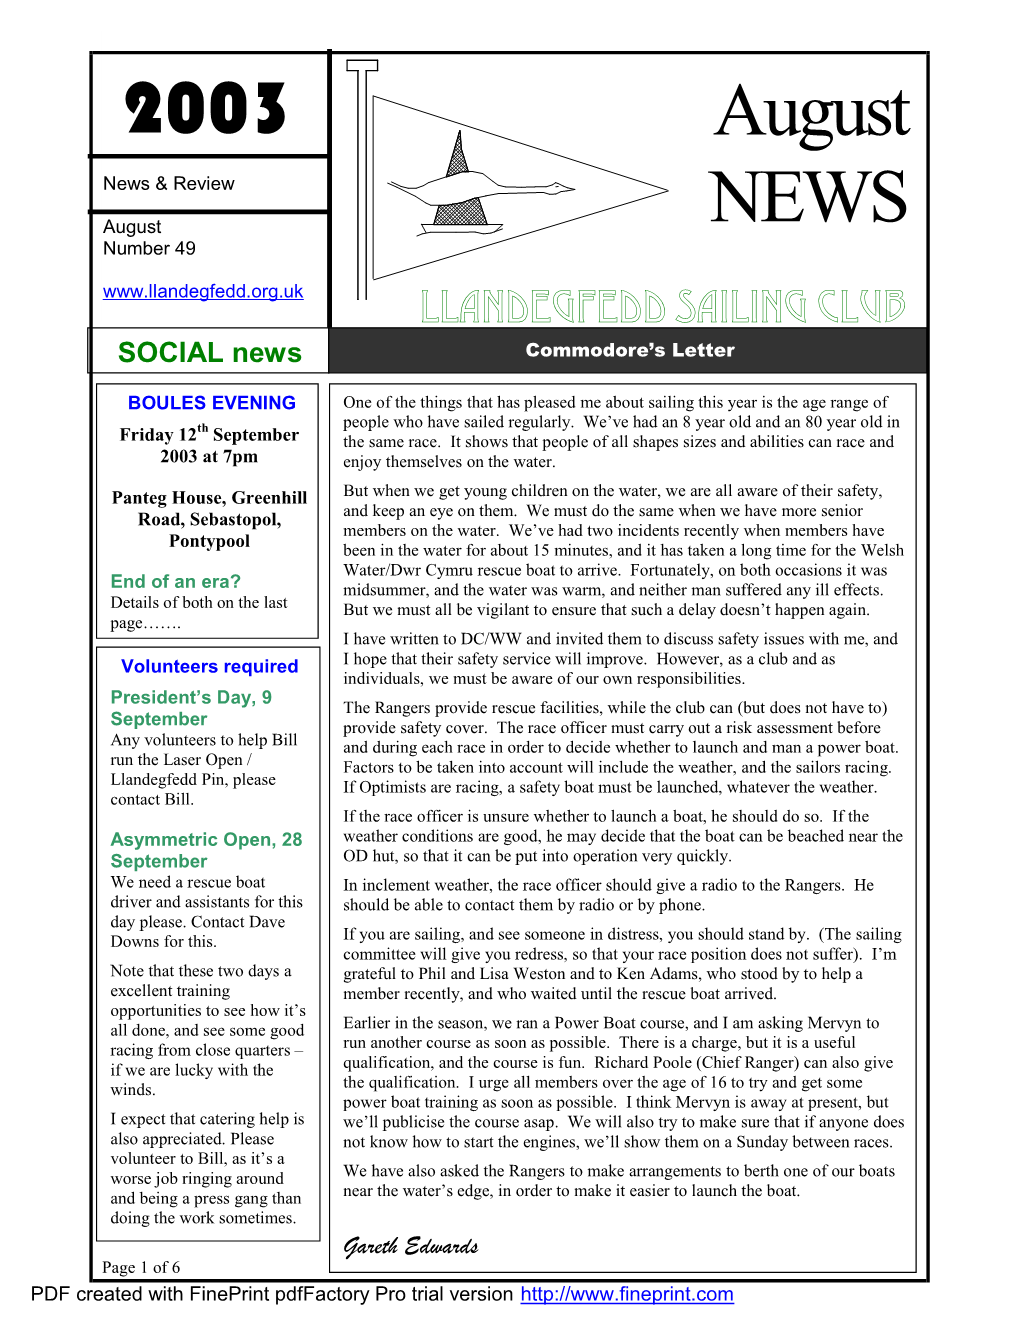 2003 August NEWS